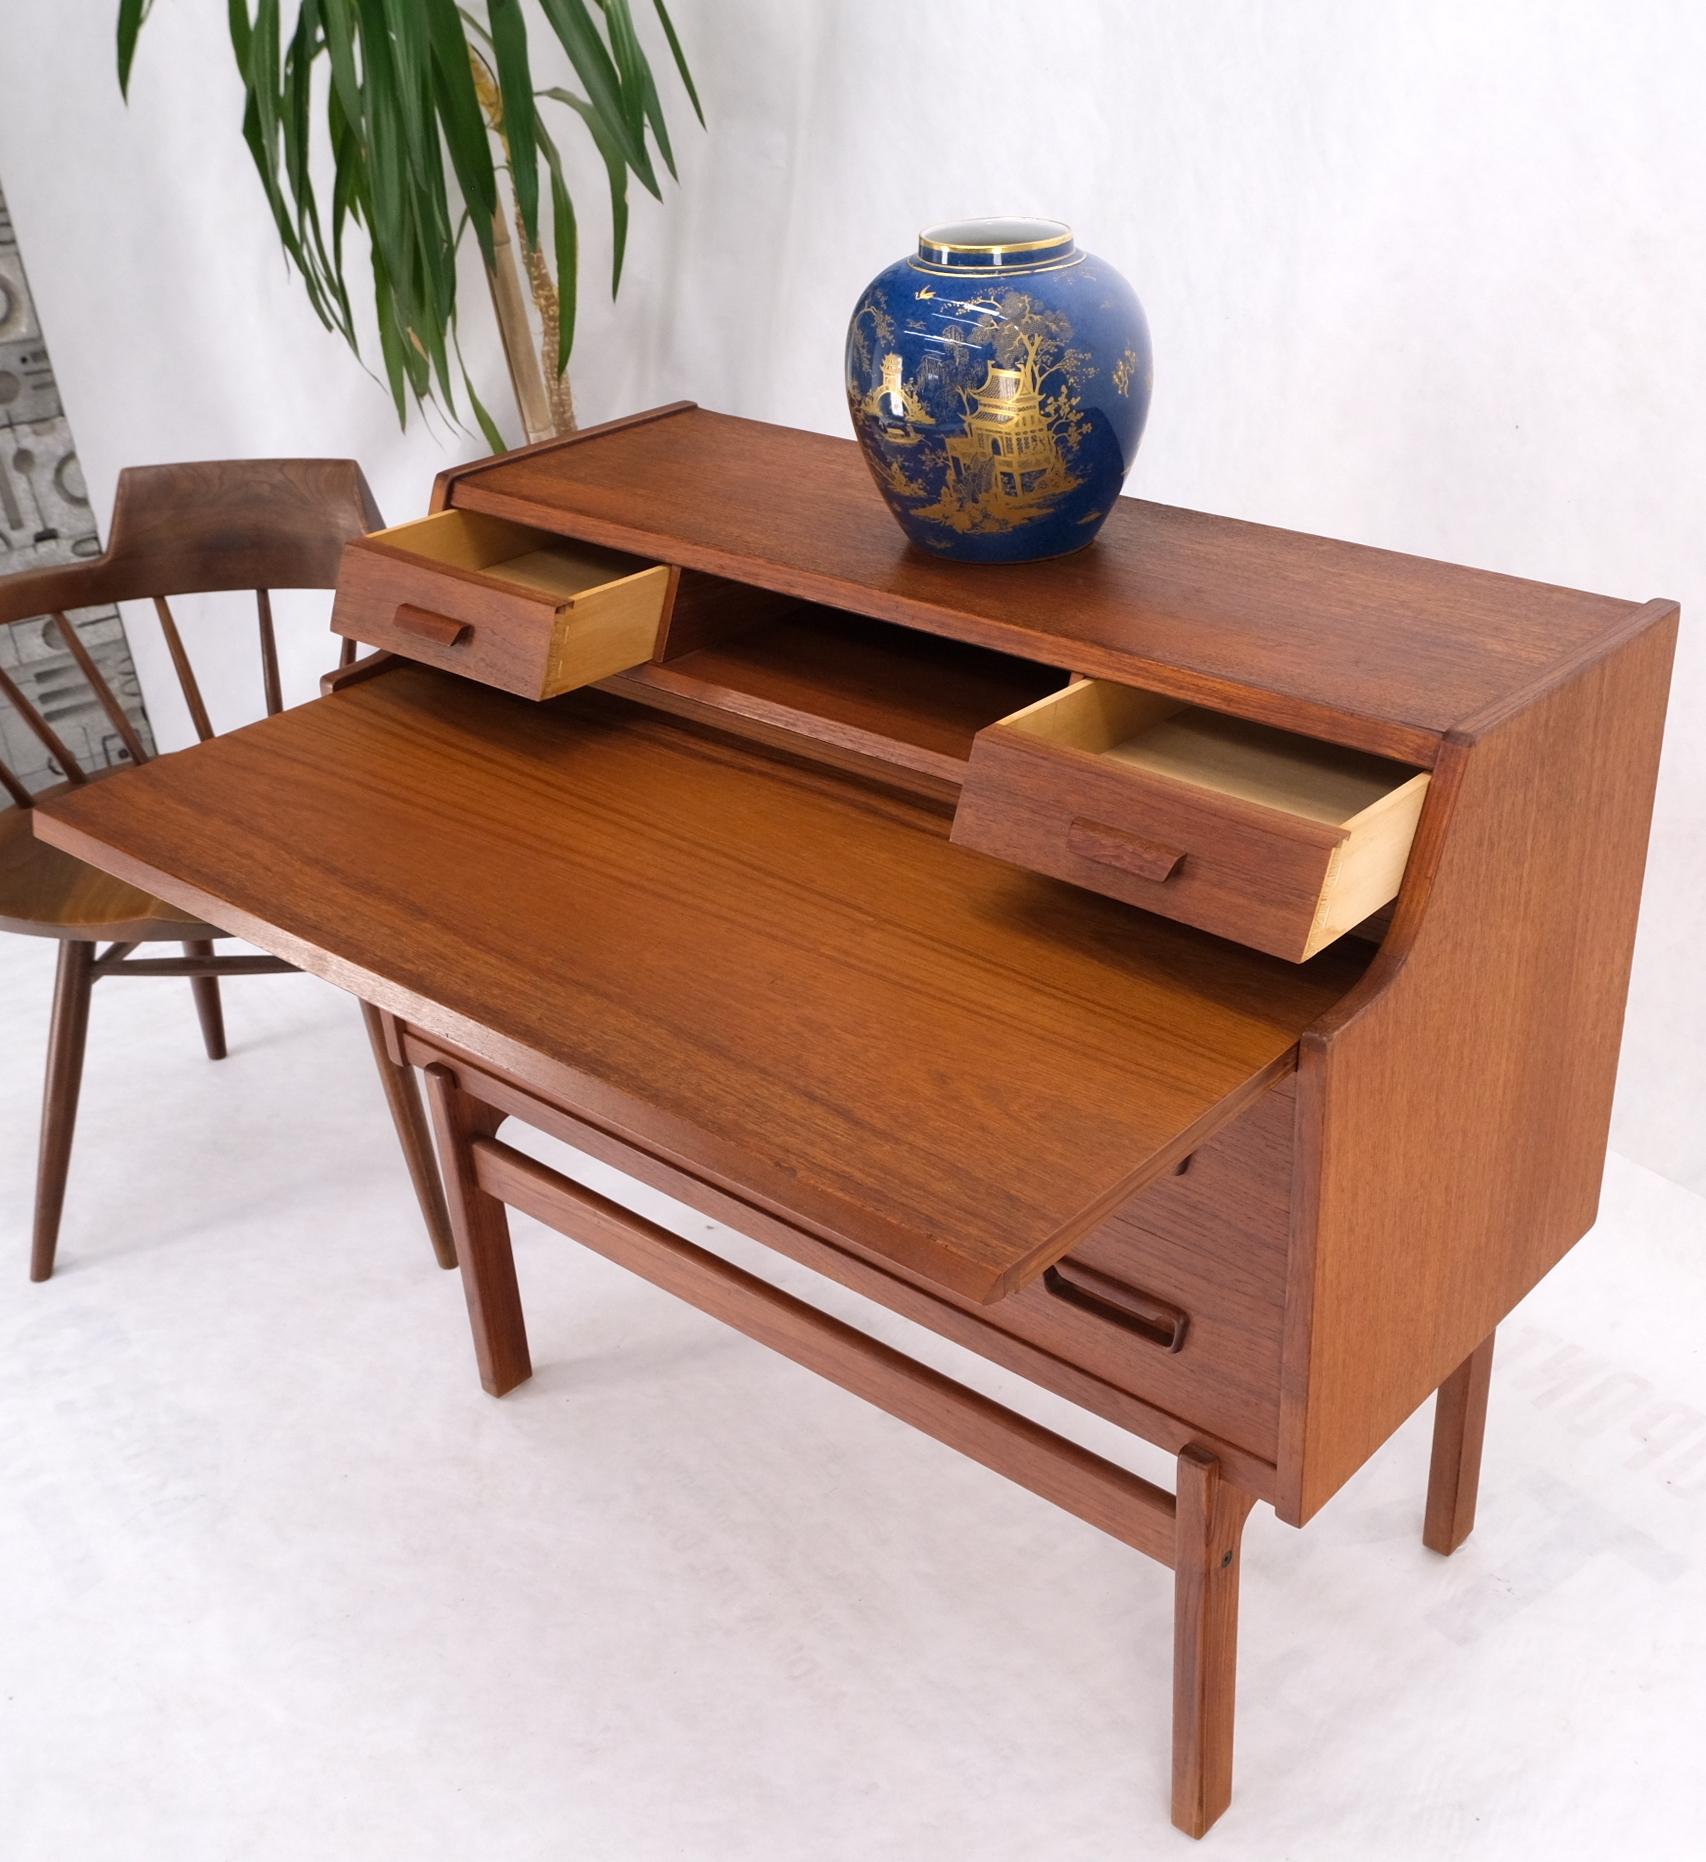 Danish Mid-Century Modern teak pull out secretary desk chest of drawers dresser.